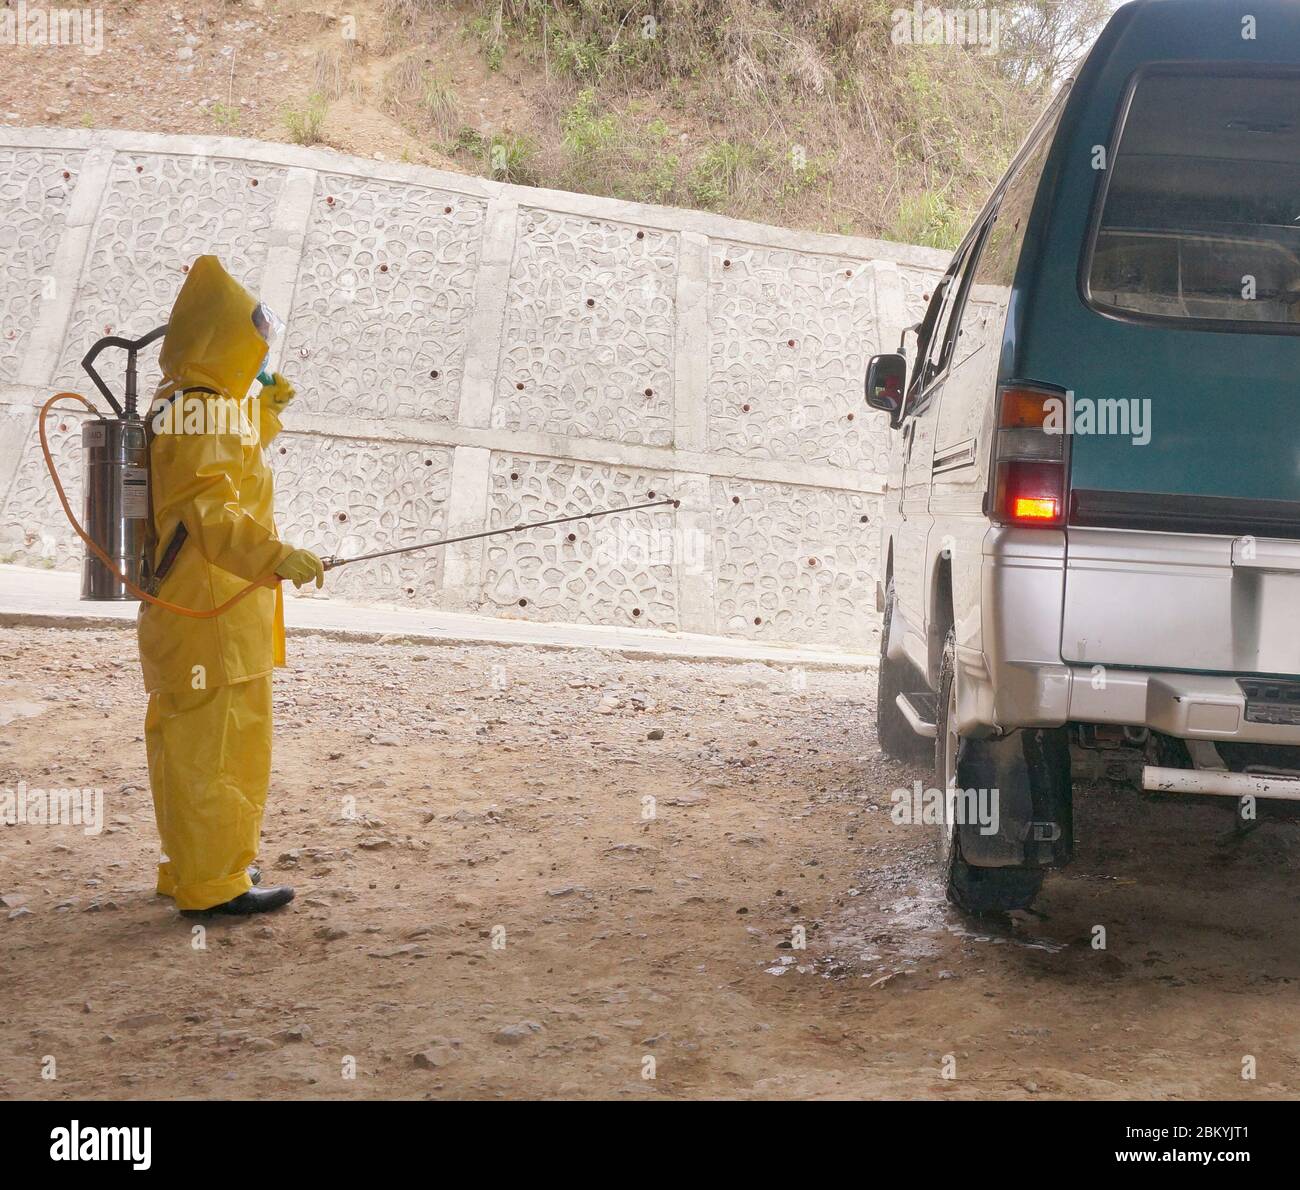 Un disinfettante spray per il personale su furgone, una delle procedure per contenere o evitare la diffusione del virus della corona o COVID-19. (Filippine 6 maggio 2020). Foto Stock